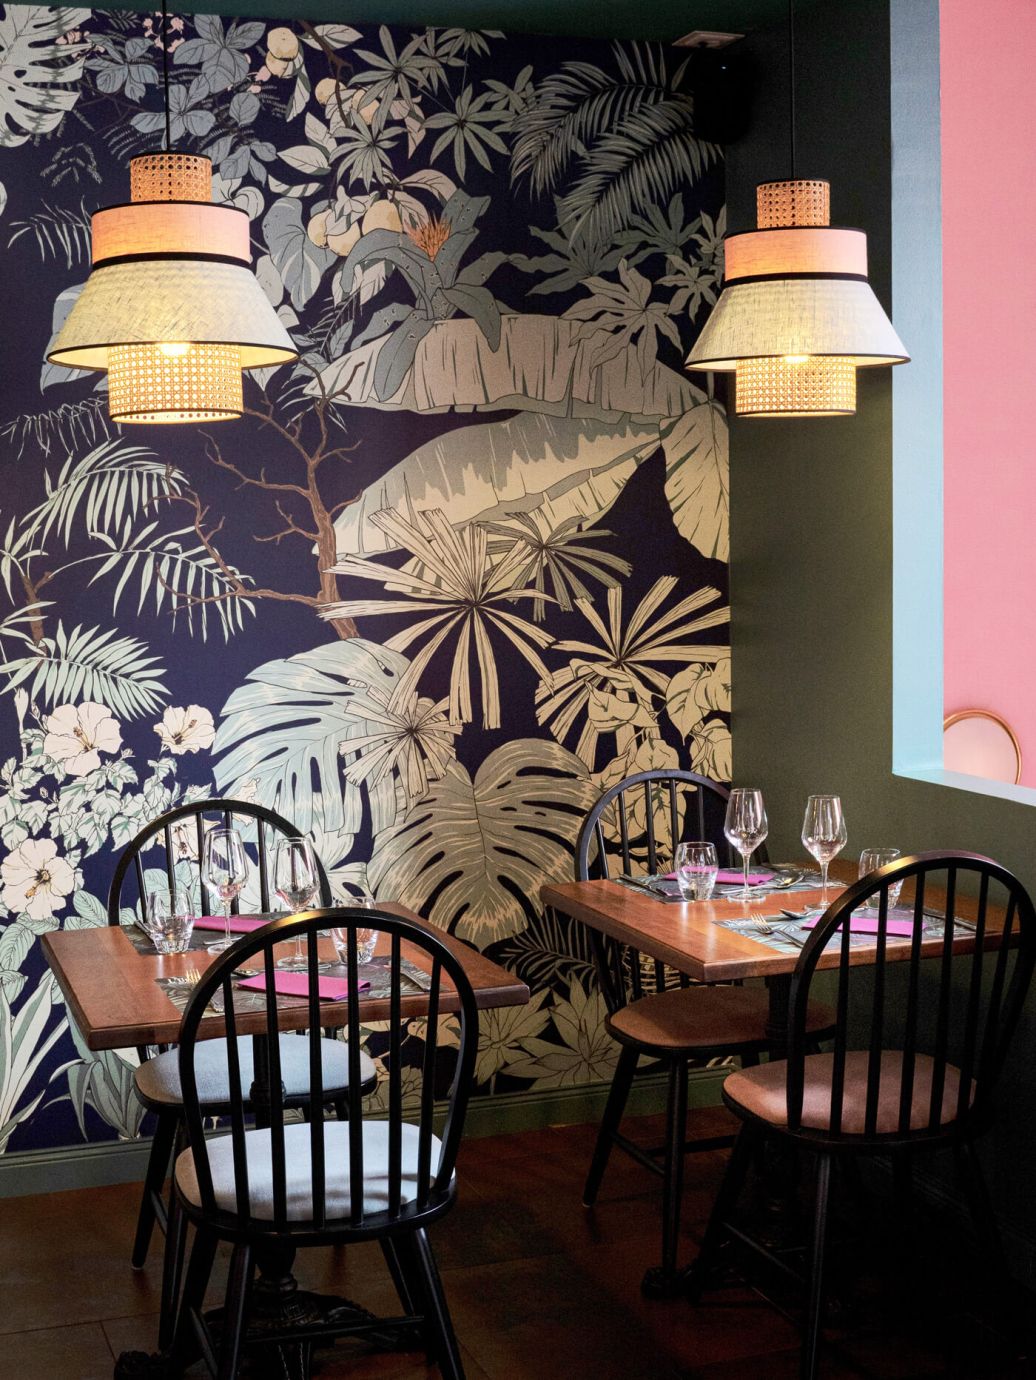 decoration_restaurant_union_lausanne_suisse_romande_papierpeint_jungle_bleu_vert_rose_emmanuelle_diebold.jpg